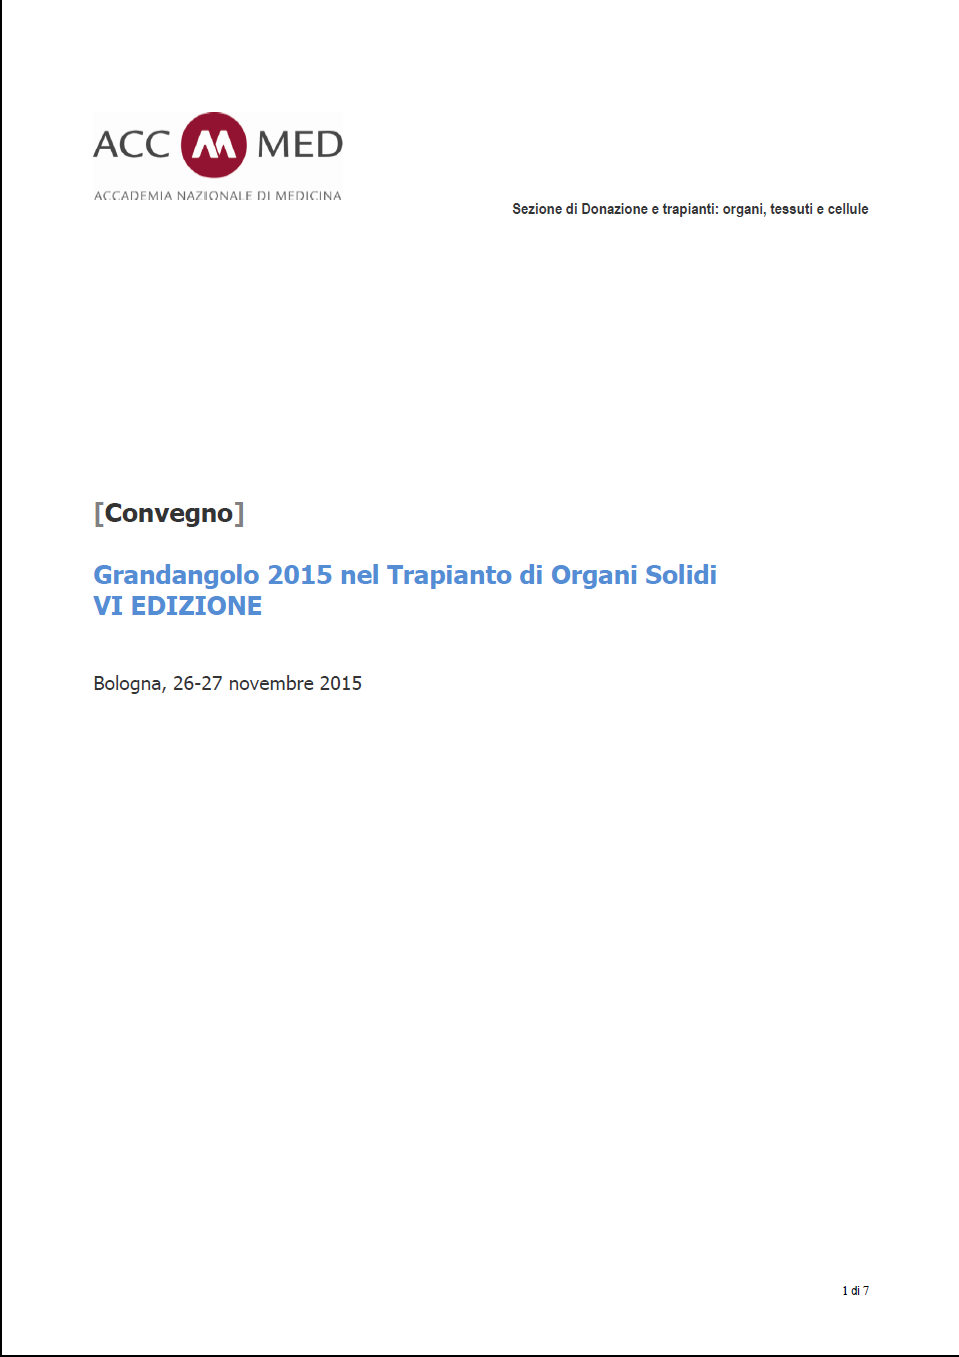 Grandangolo 2015 nel Trapianto di Organi Solidi - VI EDIZIONE